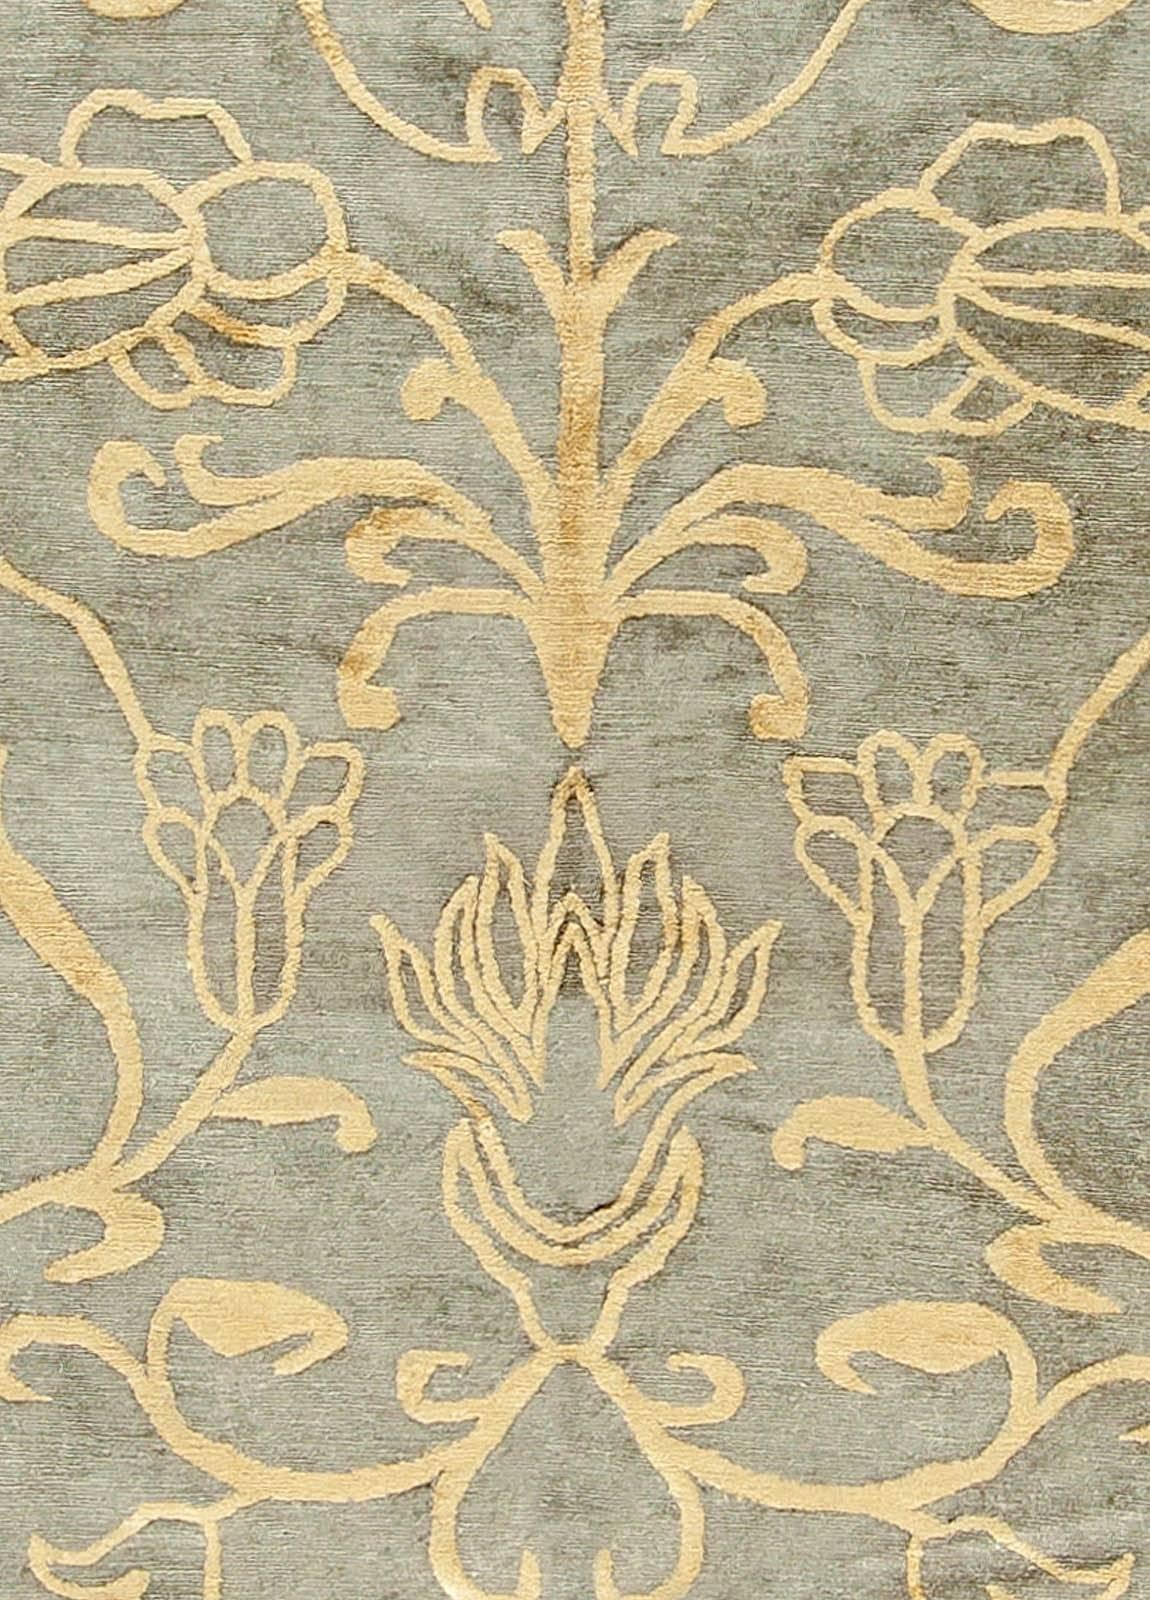 Traditioneller beigefarbener handgefertigter Teppich von Doris Leslie Blau, der von Europa inspiriert ist.
Größe: 11'7